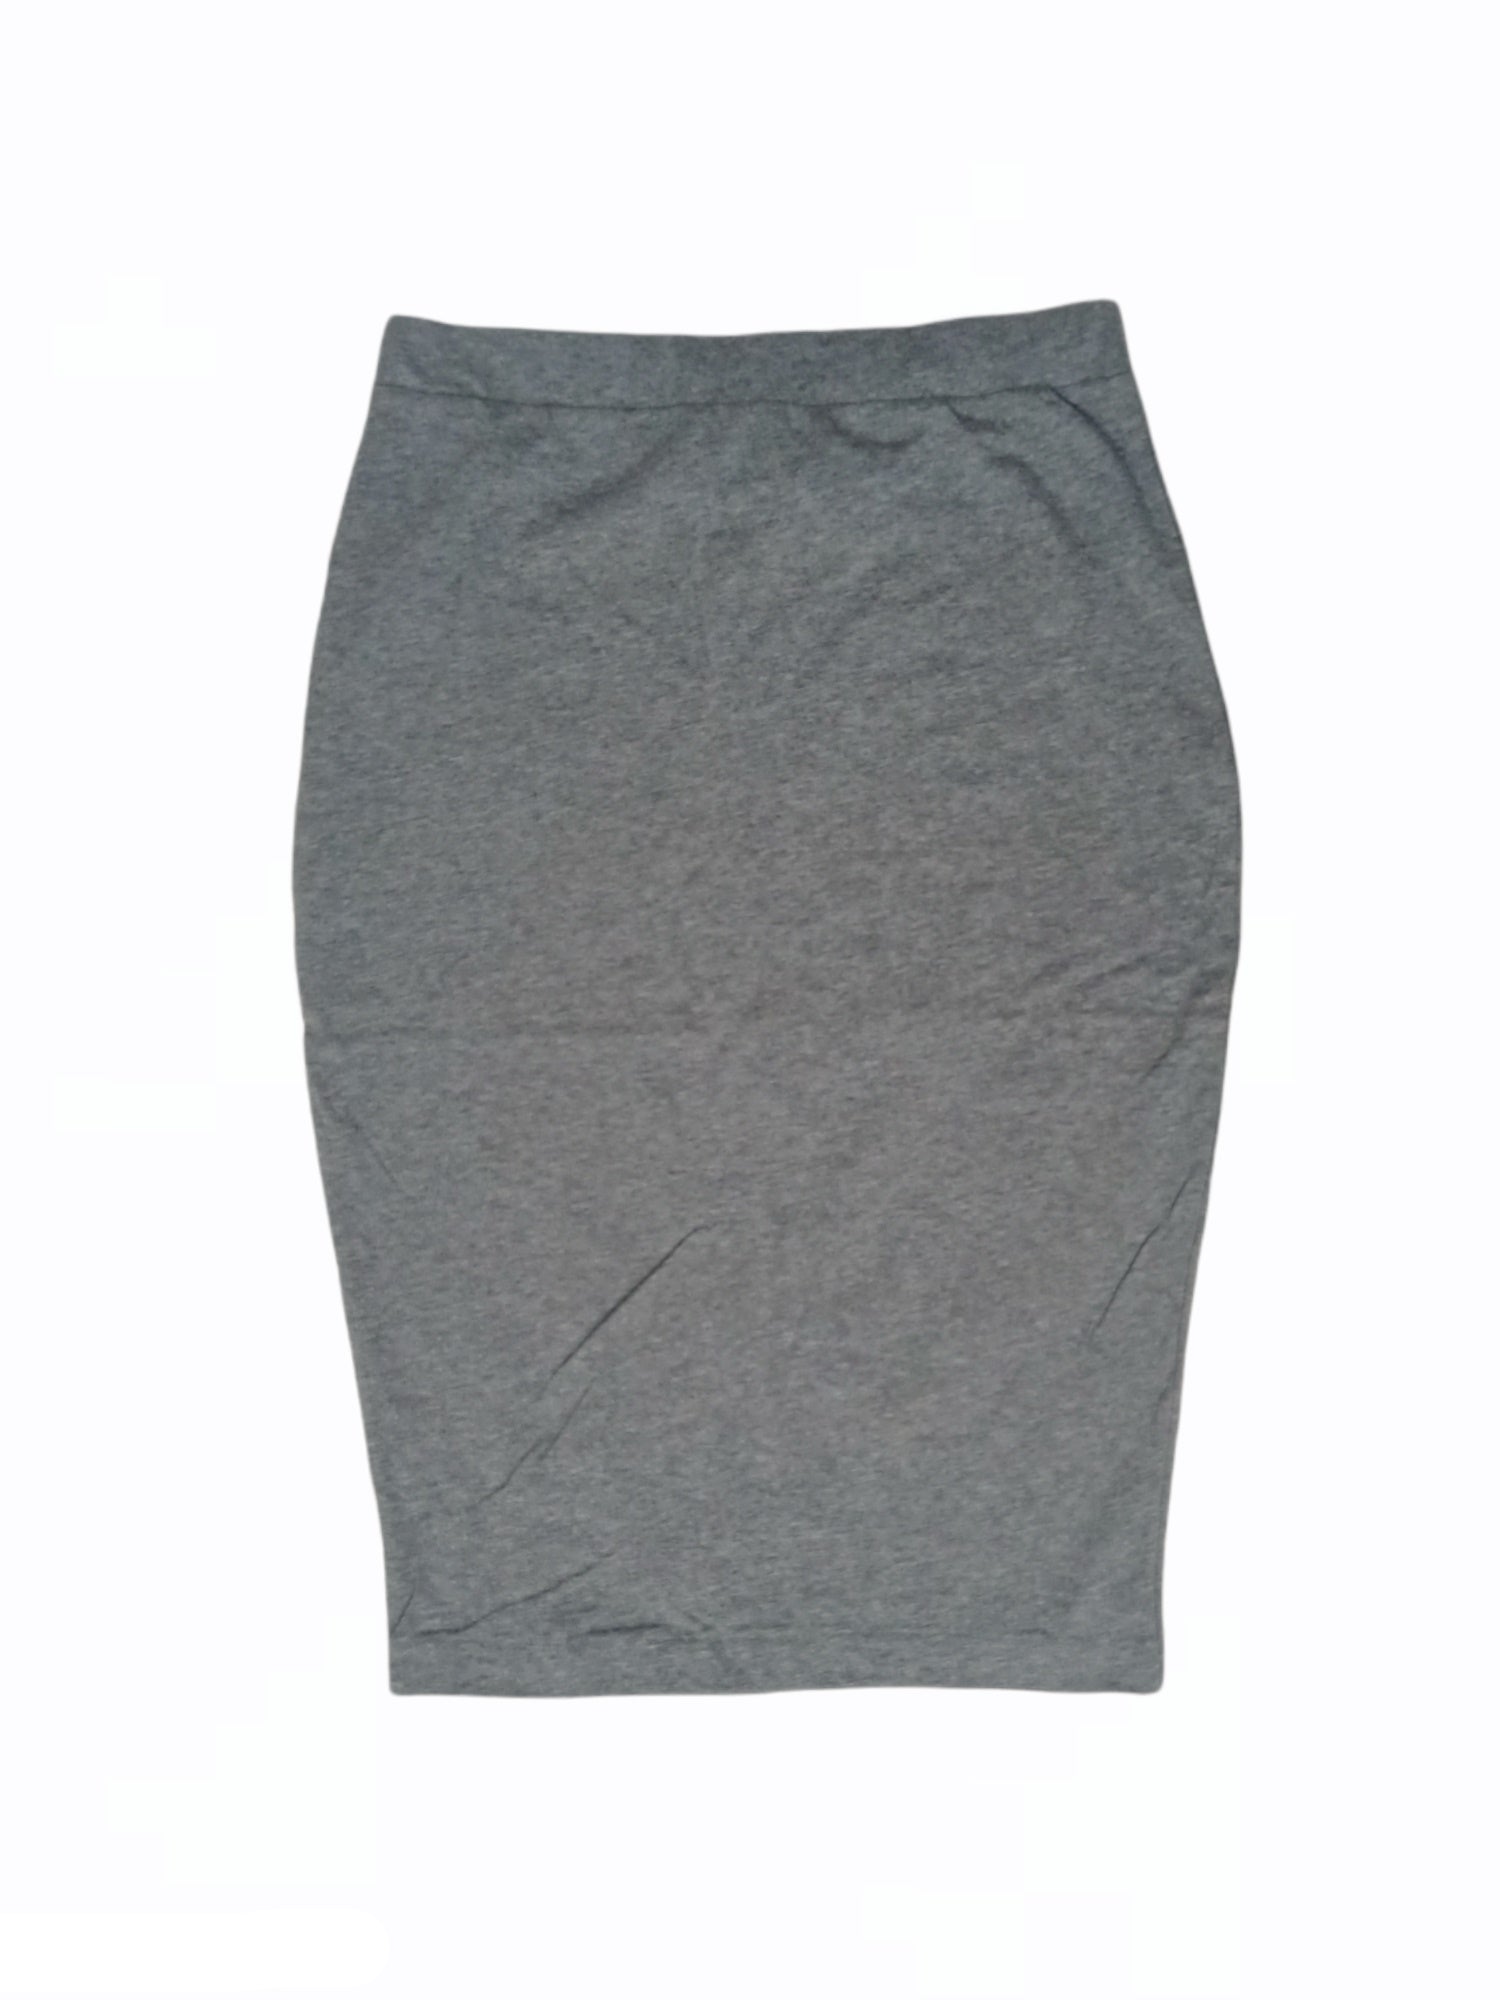 ElOutlet Women Skirt Grey Women Cotton Skirt